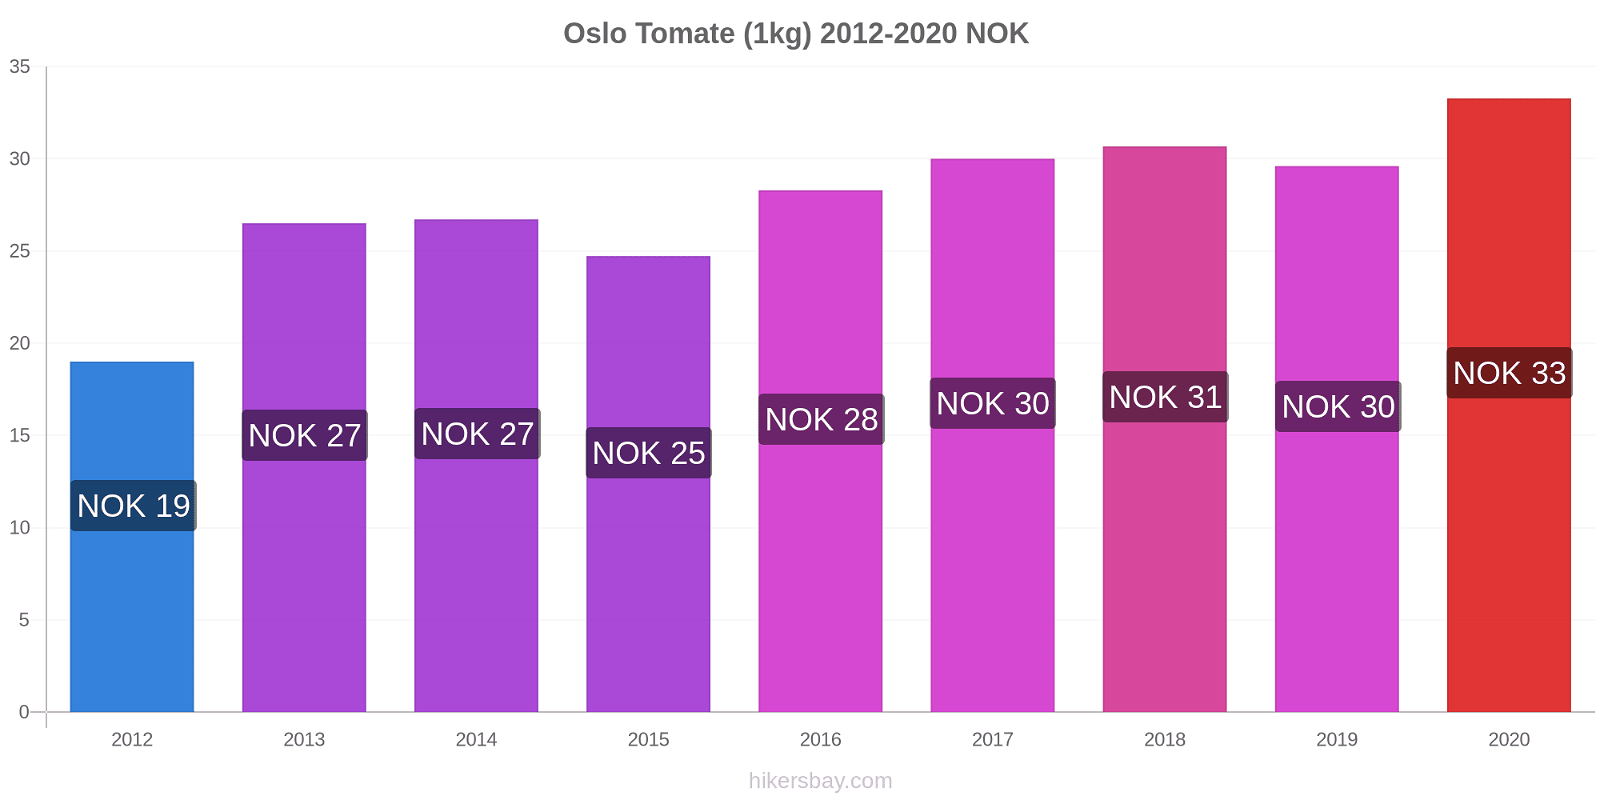 Oslo cambios de precios Tomate (1kg) hikersbay.com